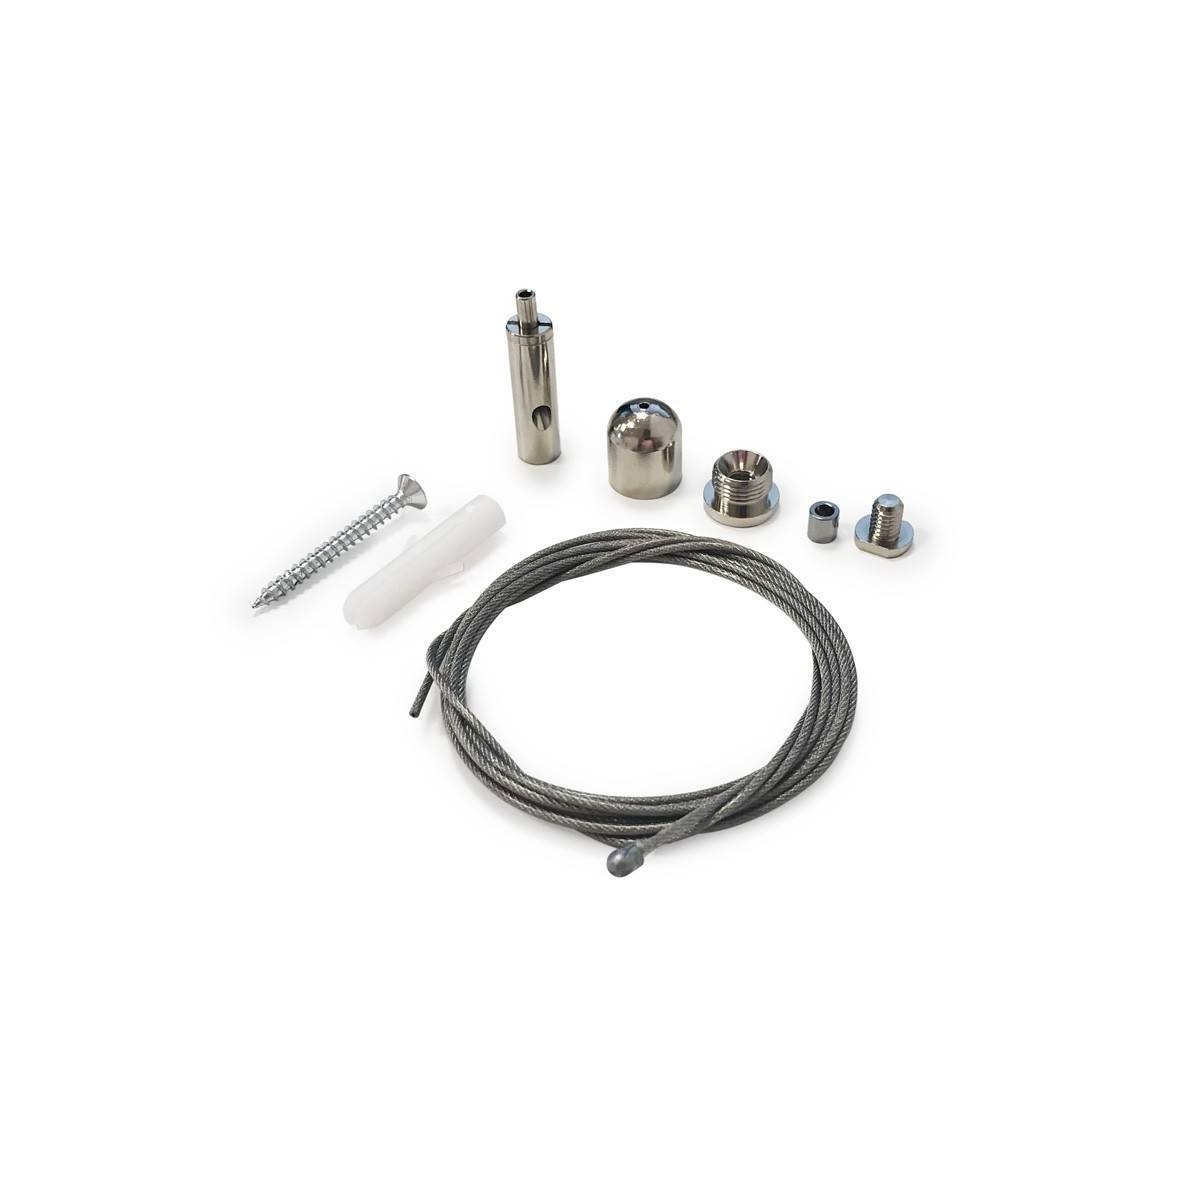 Cable de suspensión para perfil de aluminio Ø23MM (1ud)